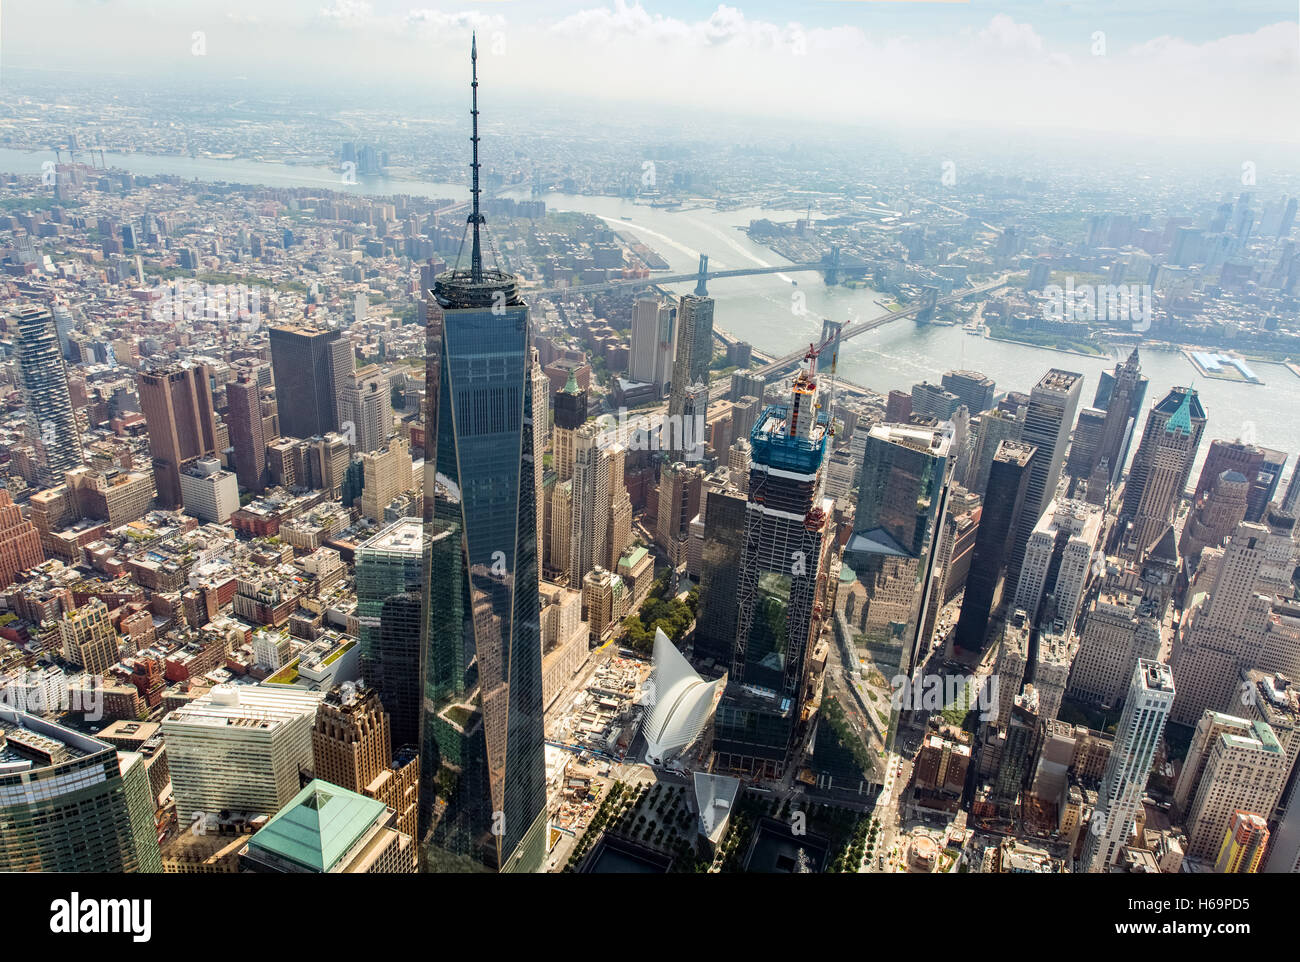 Vista aerea di One World Trade Center, noto anche come "Libertà" Tower il grattacielo più alto dell'Emisfero Occidentale, architetto David Childs. Vedere la descrizione per maggiori informazioni. Foto Stock